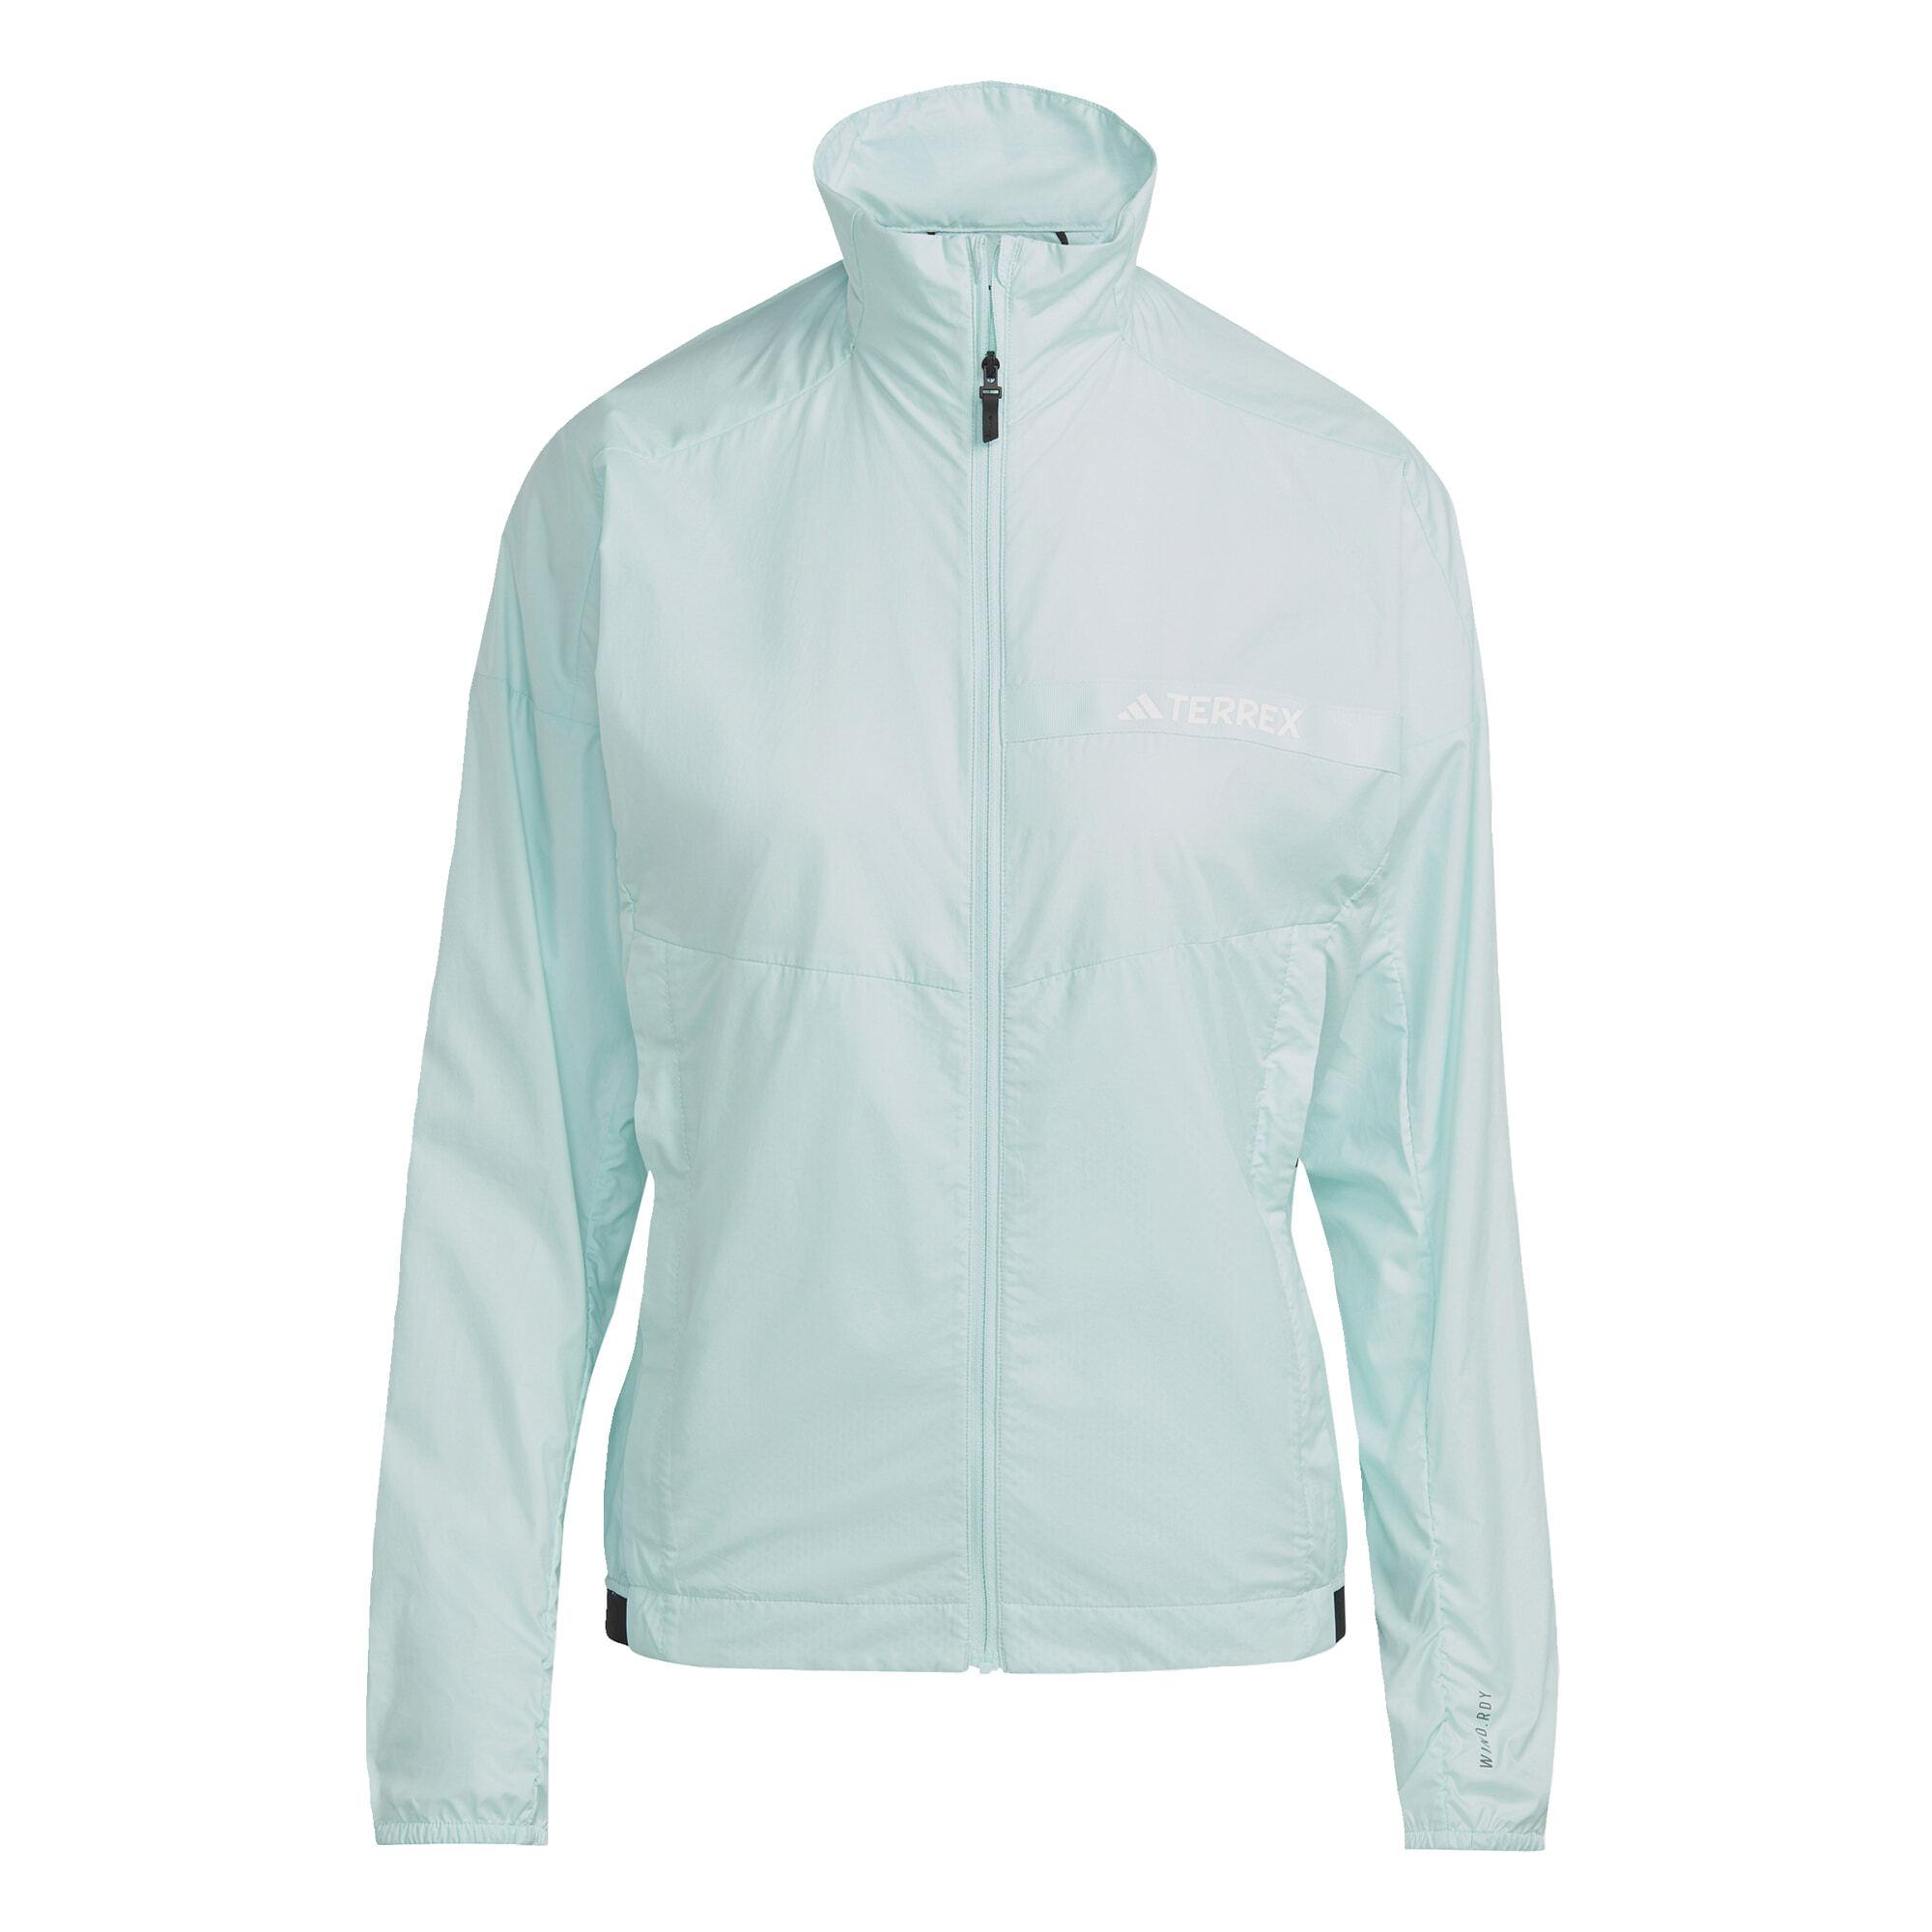 Multi SportScheck TERREX Outdoorjacke Semi Flash von im Damen kaufen Wind Aqua Adidas Jacke Online Shop